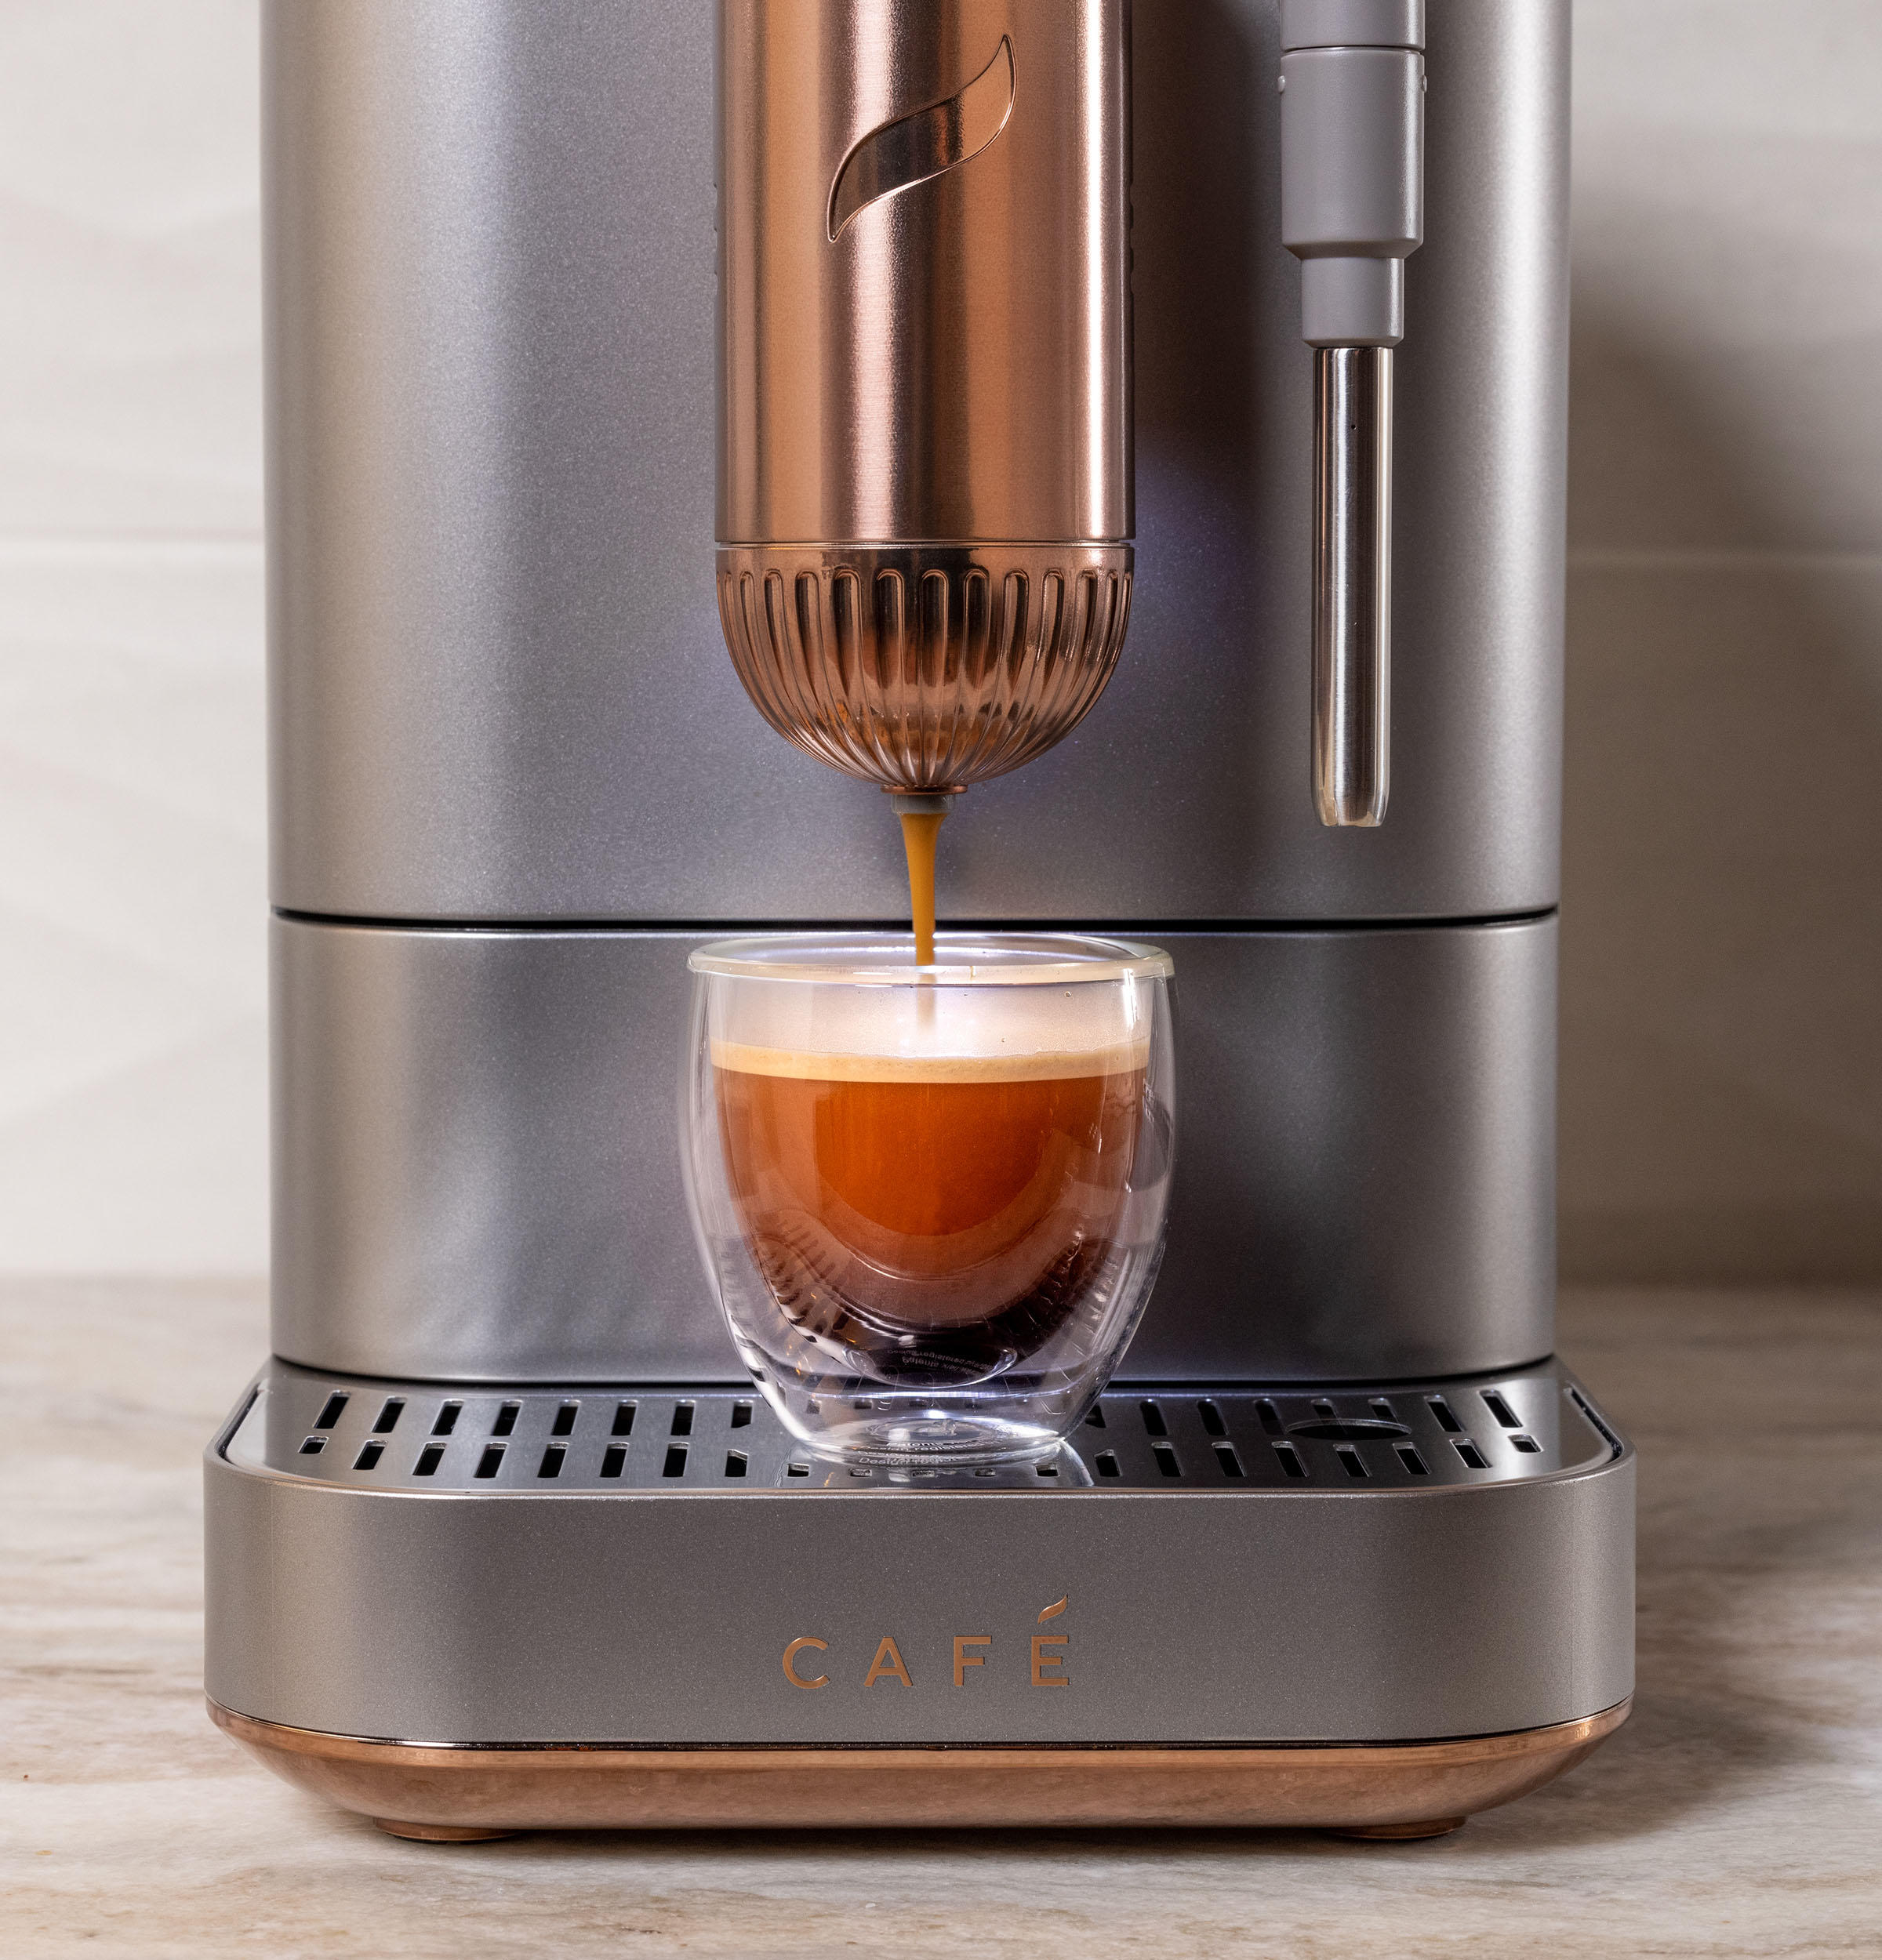 Mr. Coffee Caf Steam Automatic Espresso and Cappuccino Machine, 20 oz,  Silver